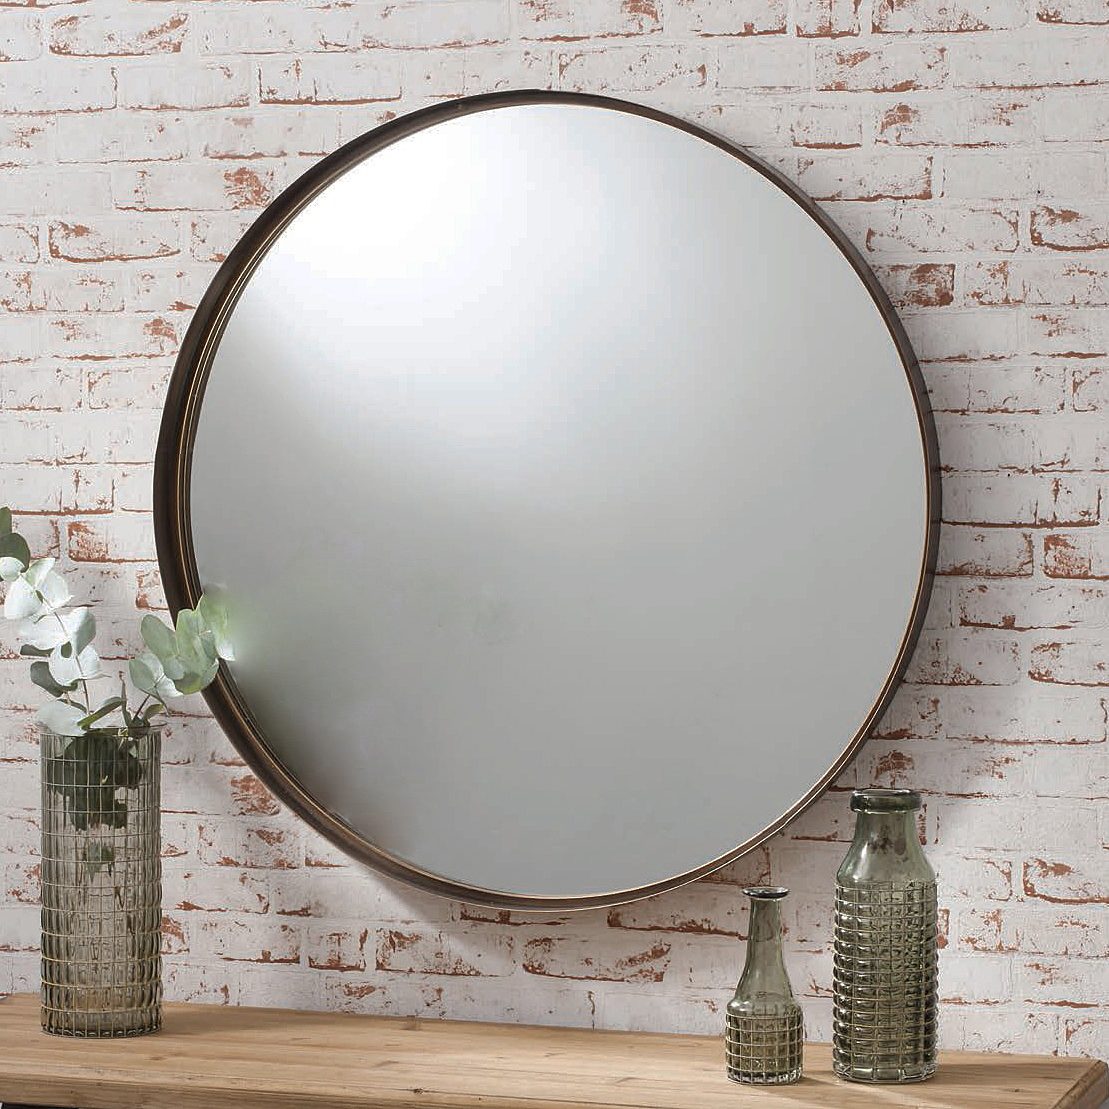 Bronze Industrial Round Mirror, Industrial Round Mirror